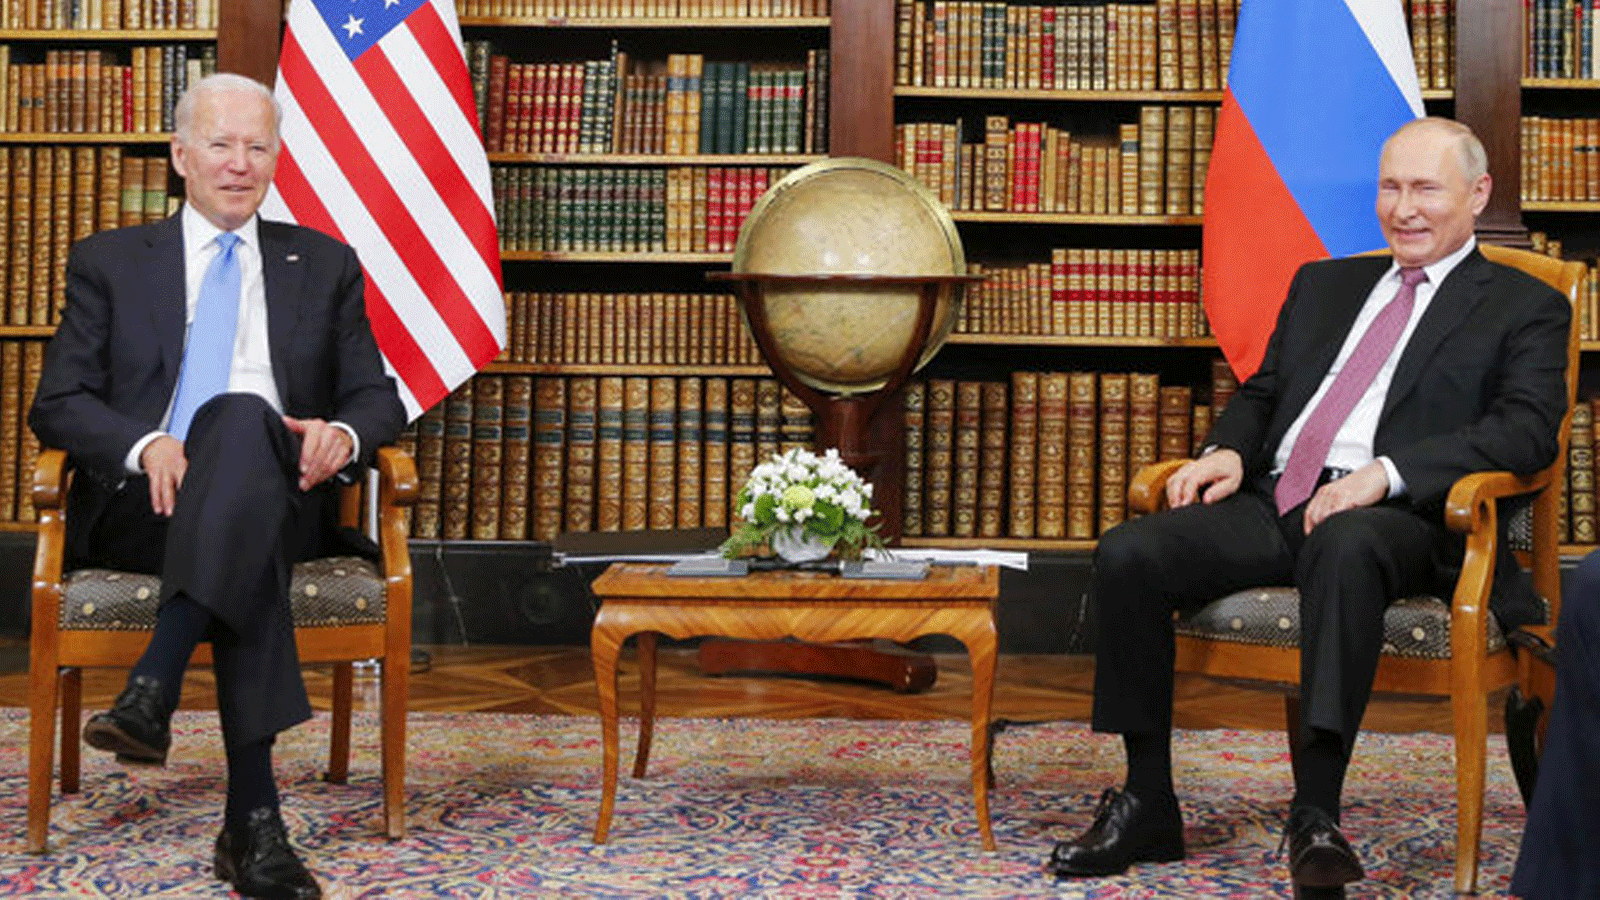 الرئيس الأمريكي جو بايدن (إلى اليسار) يلتقي بالرئيس الروسي فالديمير بوتين في 'Villa la Grange' في جنيف في 16 حزيران/يونيو 2021.